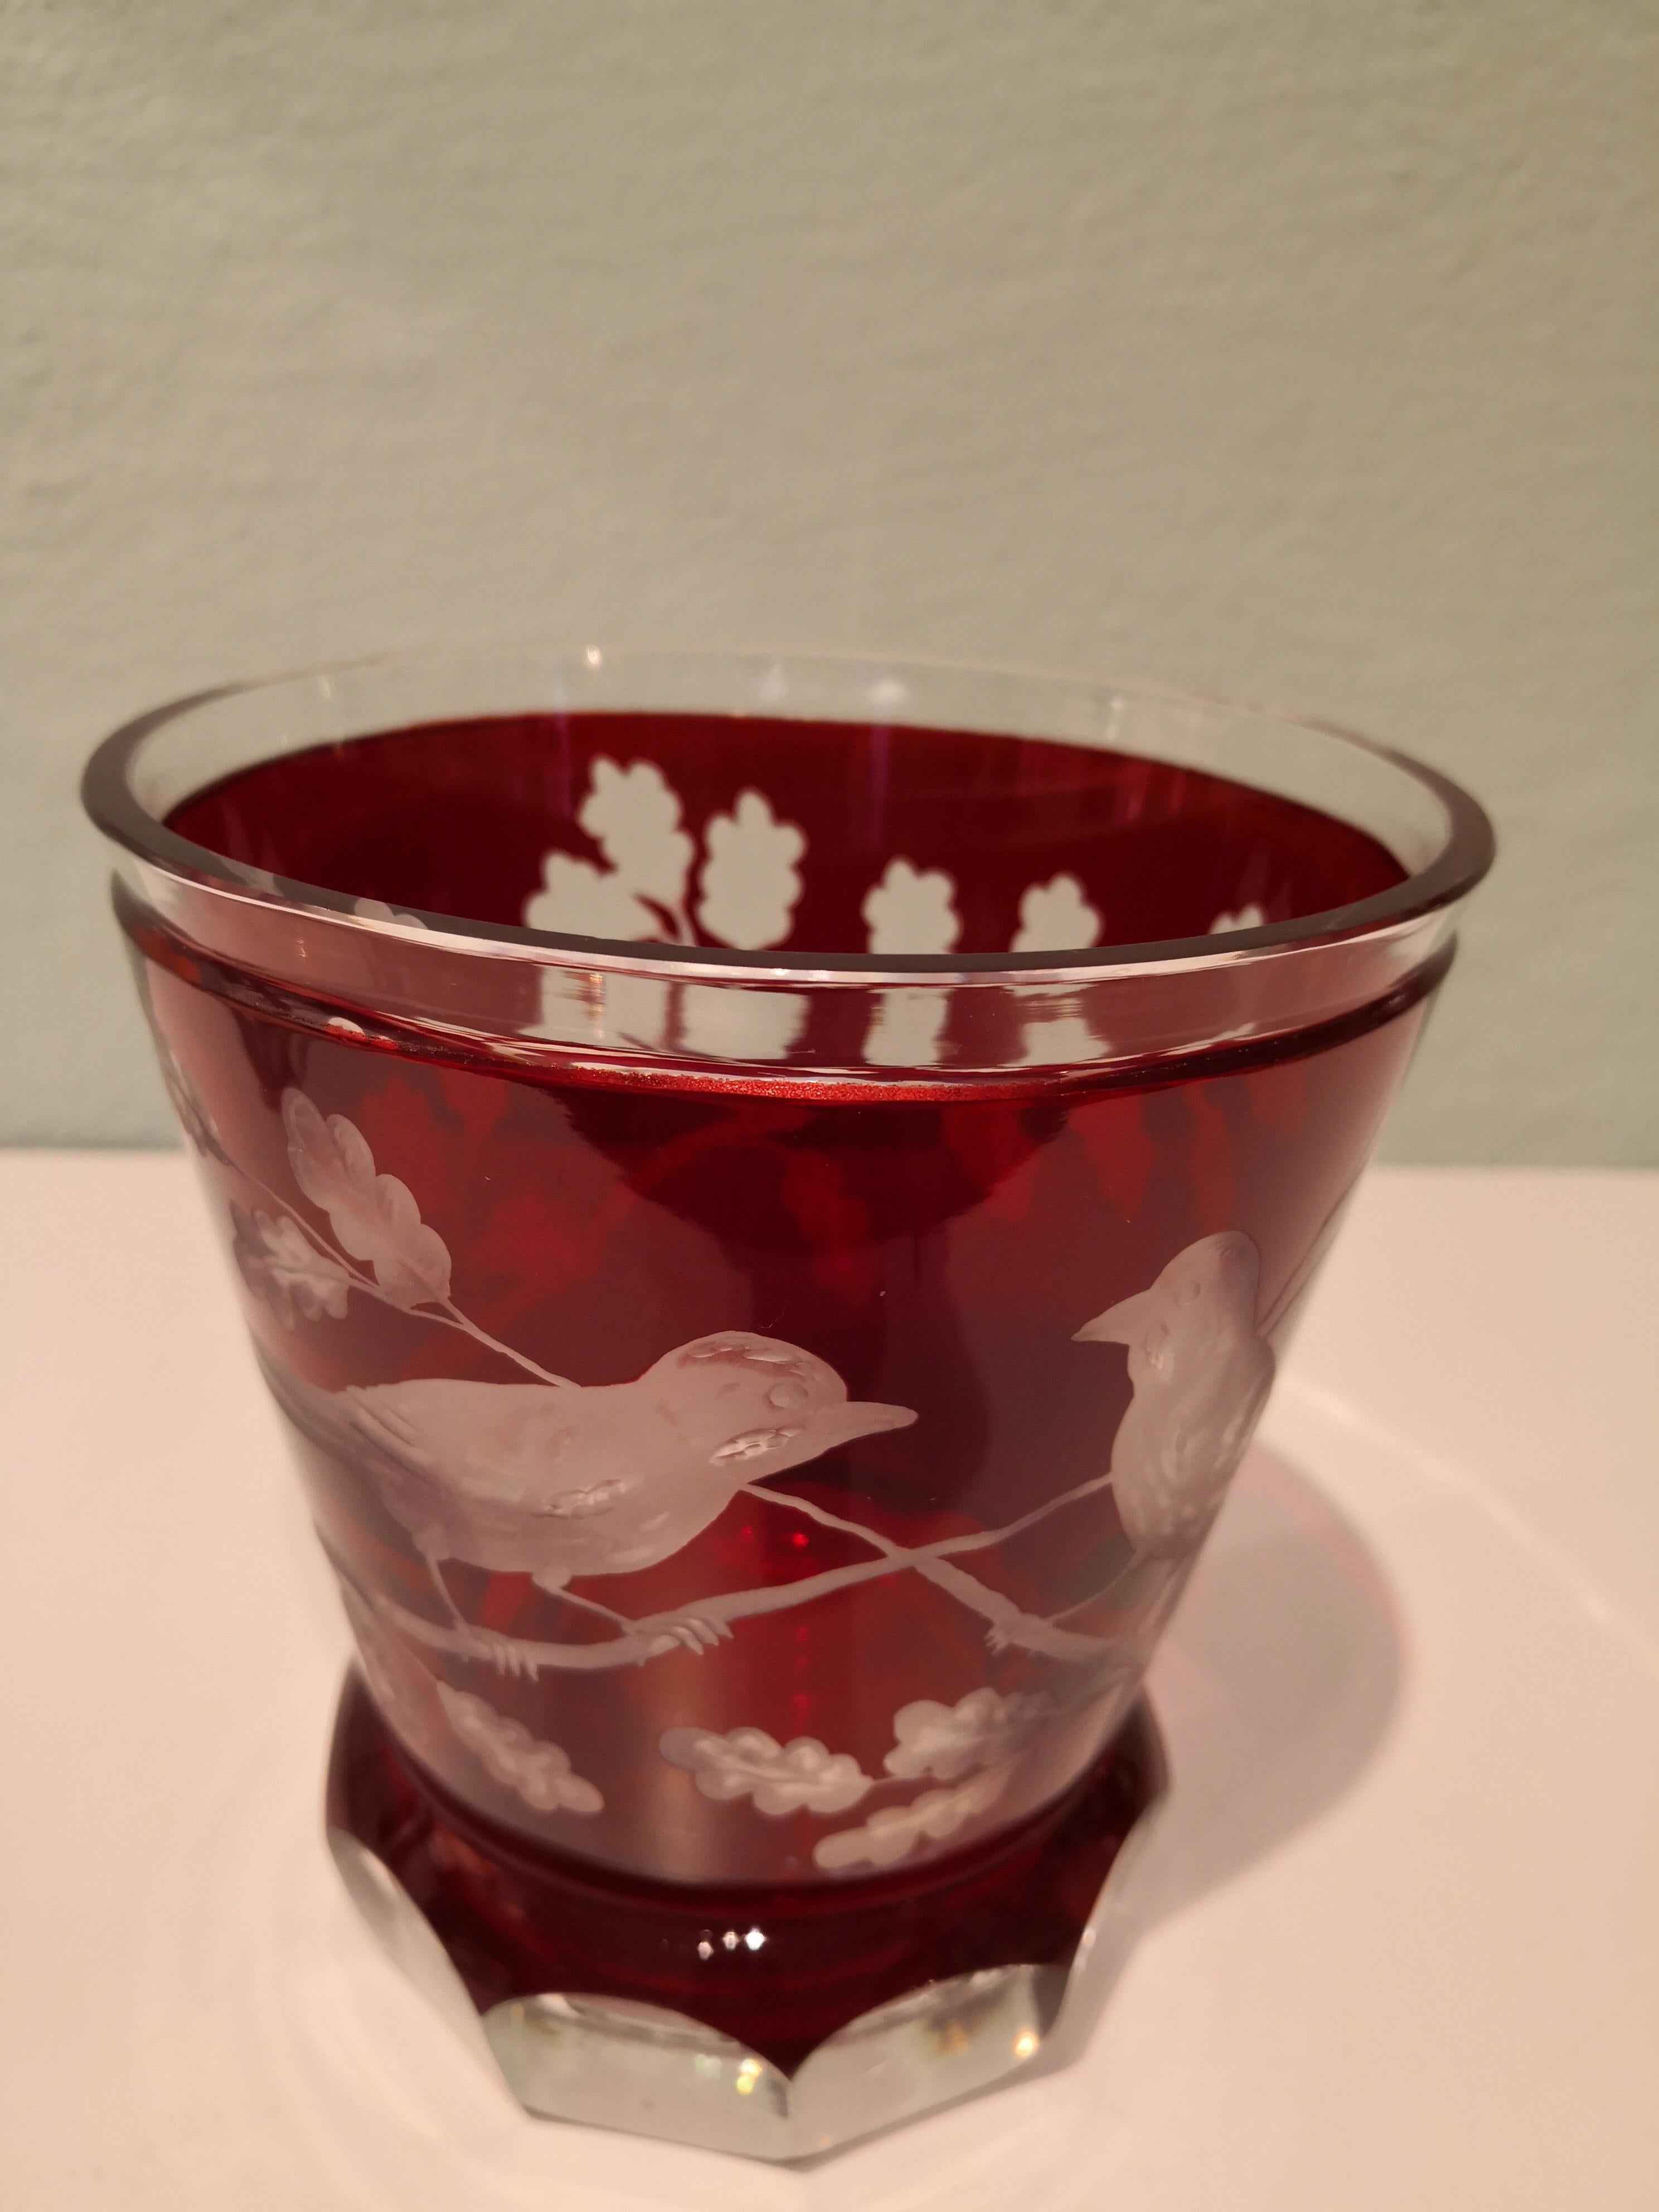 Vase/laterne en cristal soufflé à la main de couleur rouge vif. Sculptée à la main par des artistes verriers bavarois avec un décor d'oiseaux dans le style de la campagne. Une riche guirlande de feuilles de chêne sur tout le pourtour avec deux